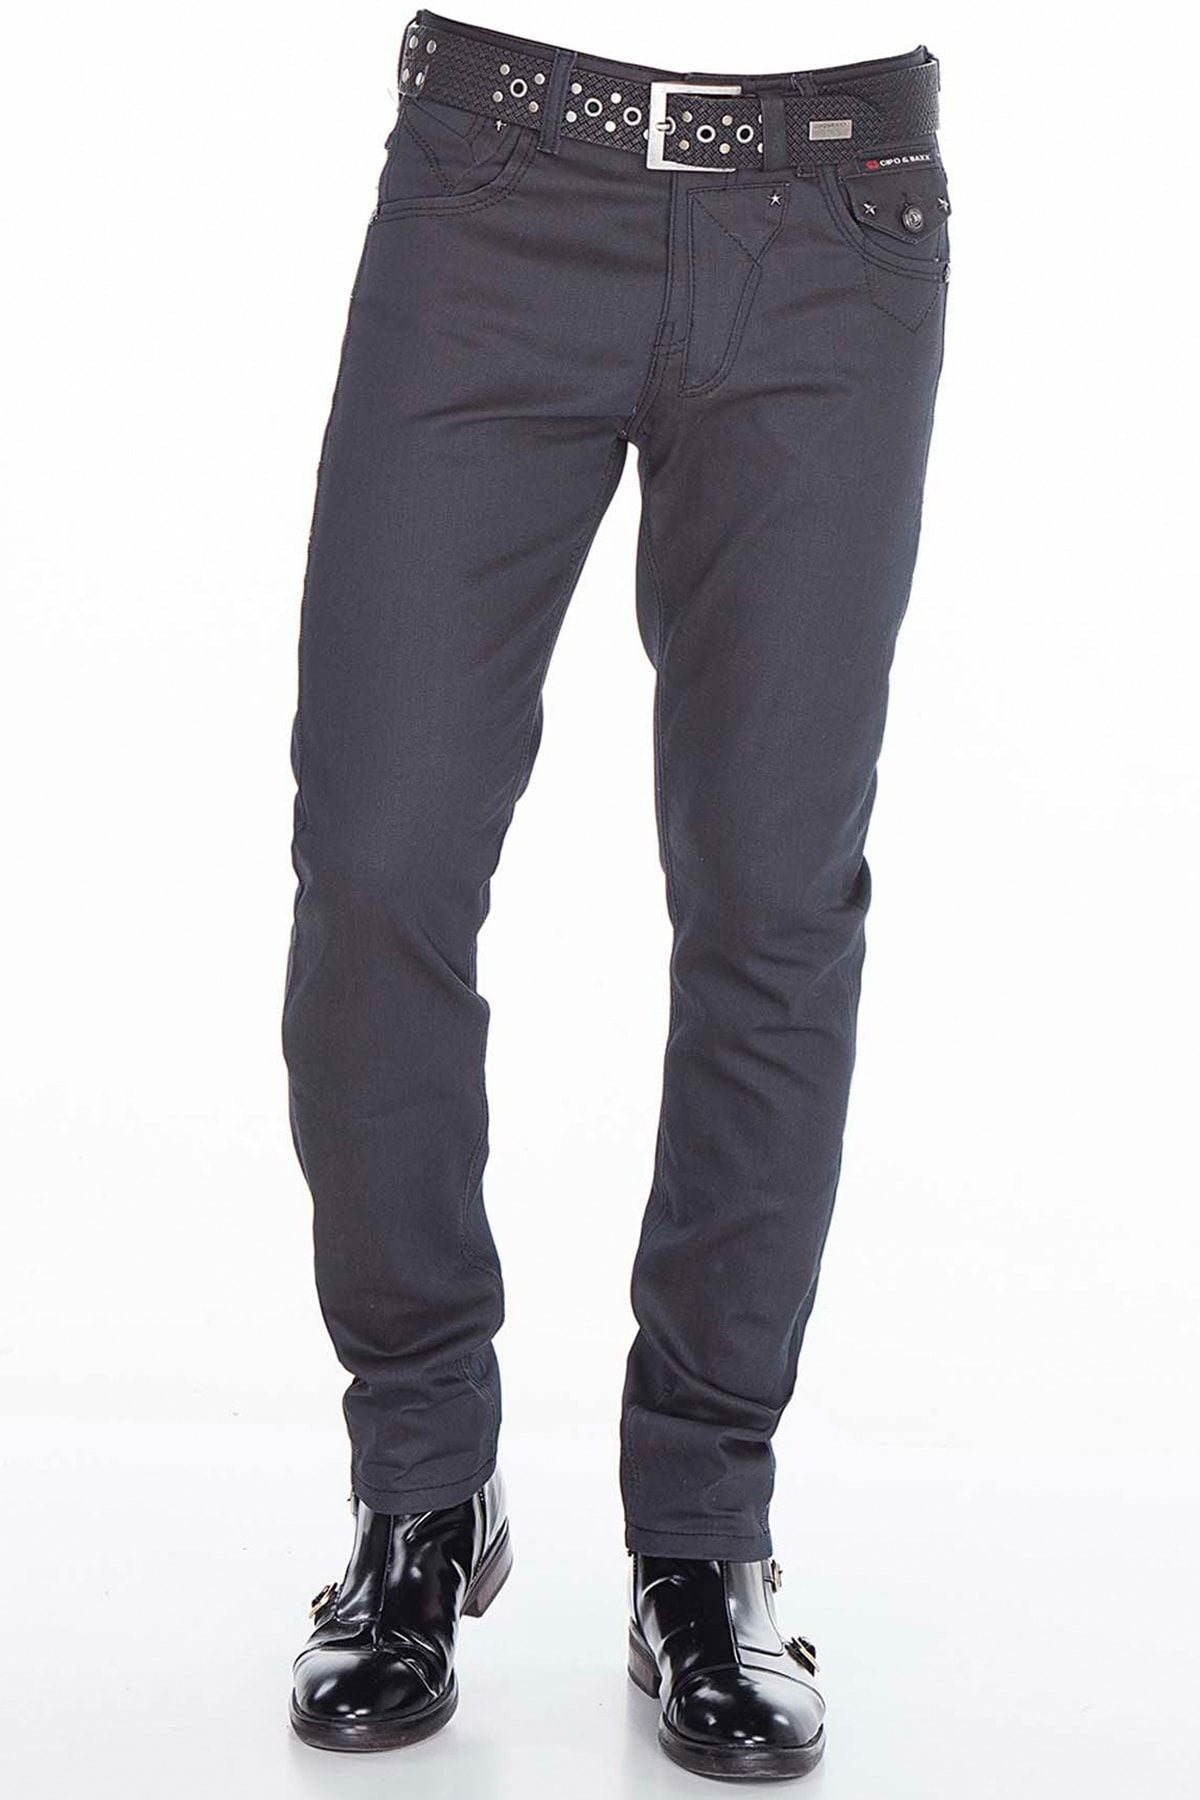 Jeans comodi da uomo CD398 in un look moderno